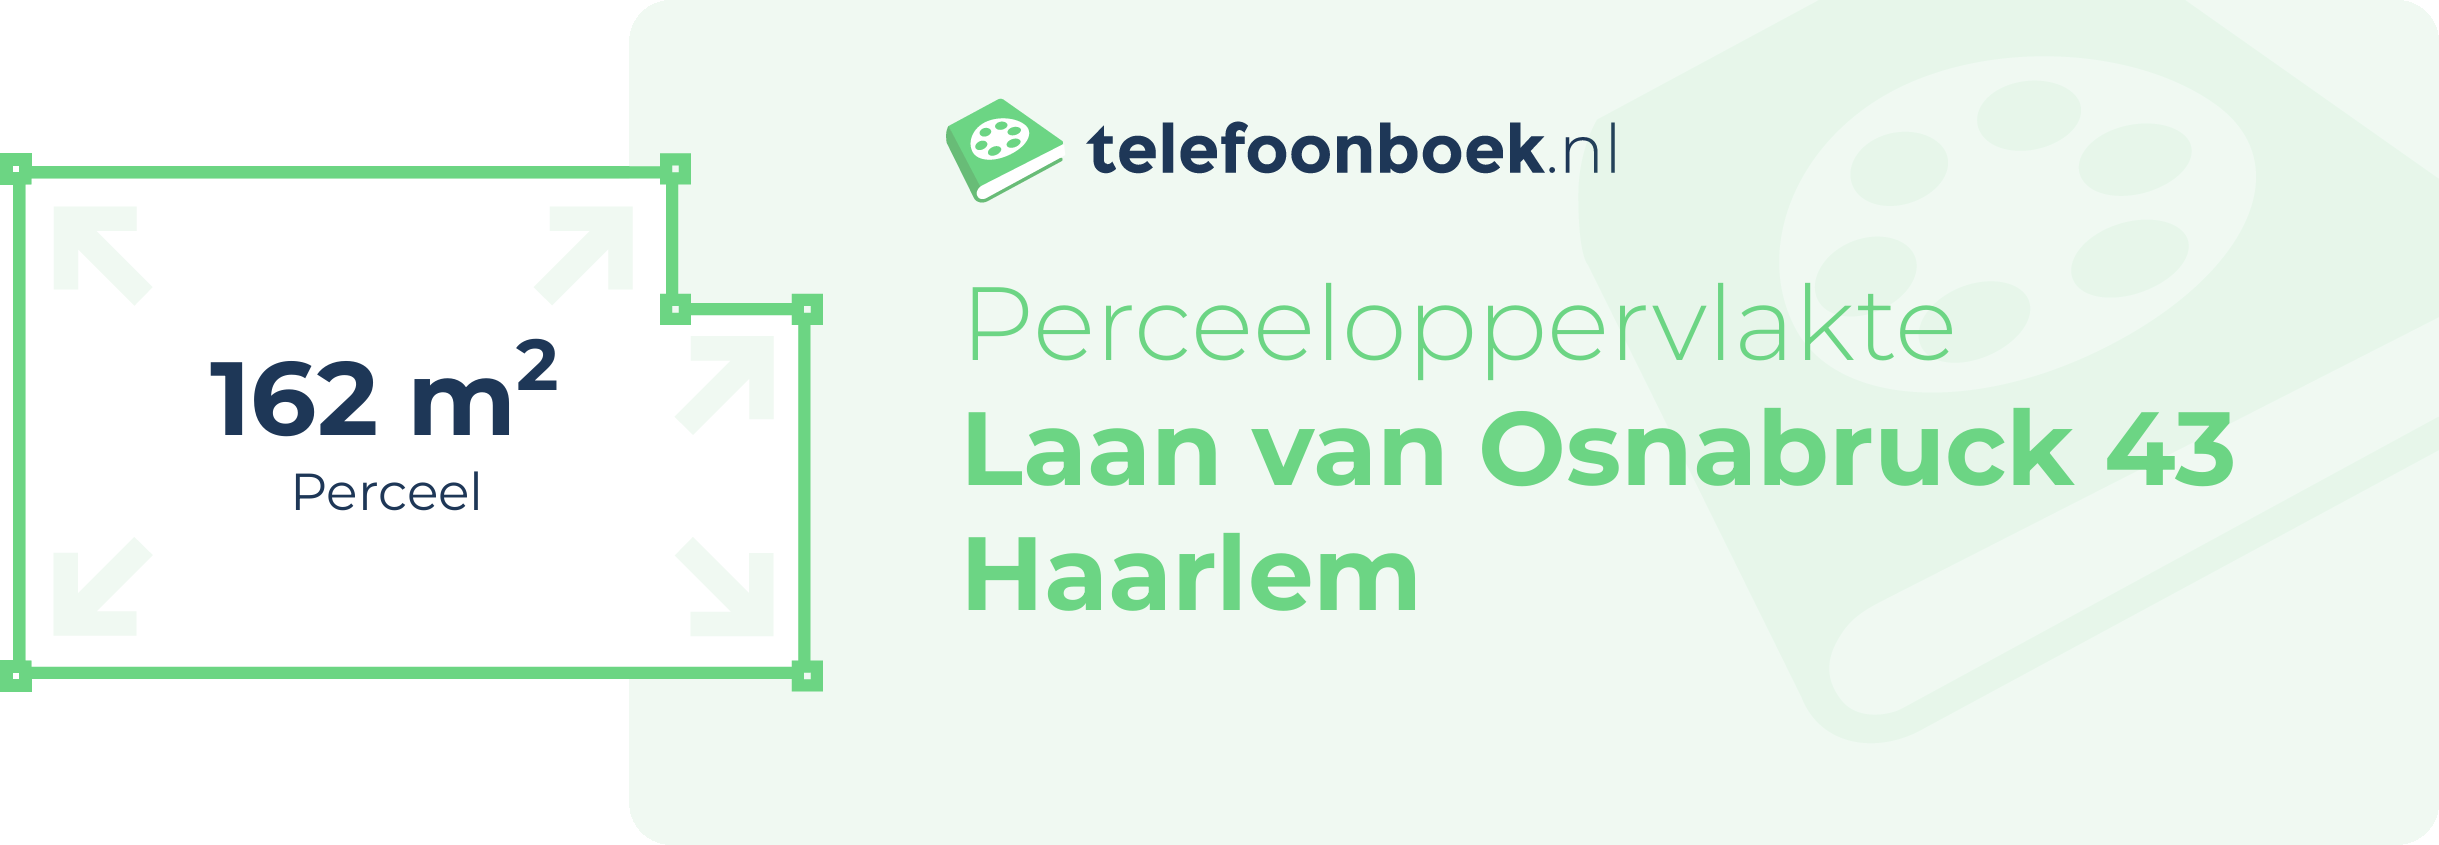 Perceeloppervlakte Laan Van Osnabruck 43 Haarlem